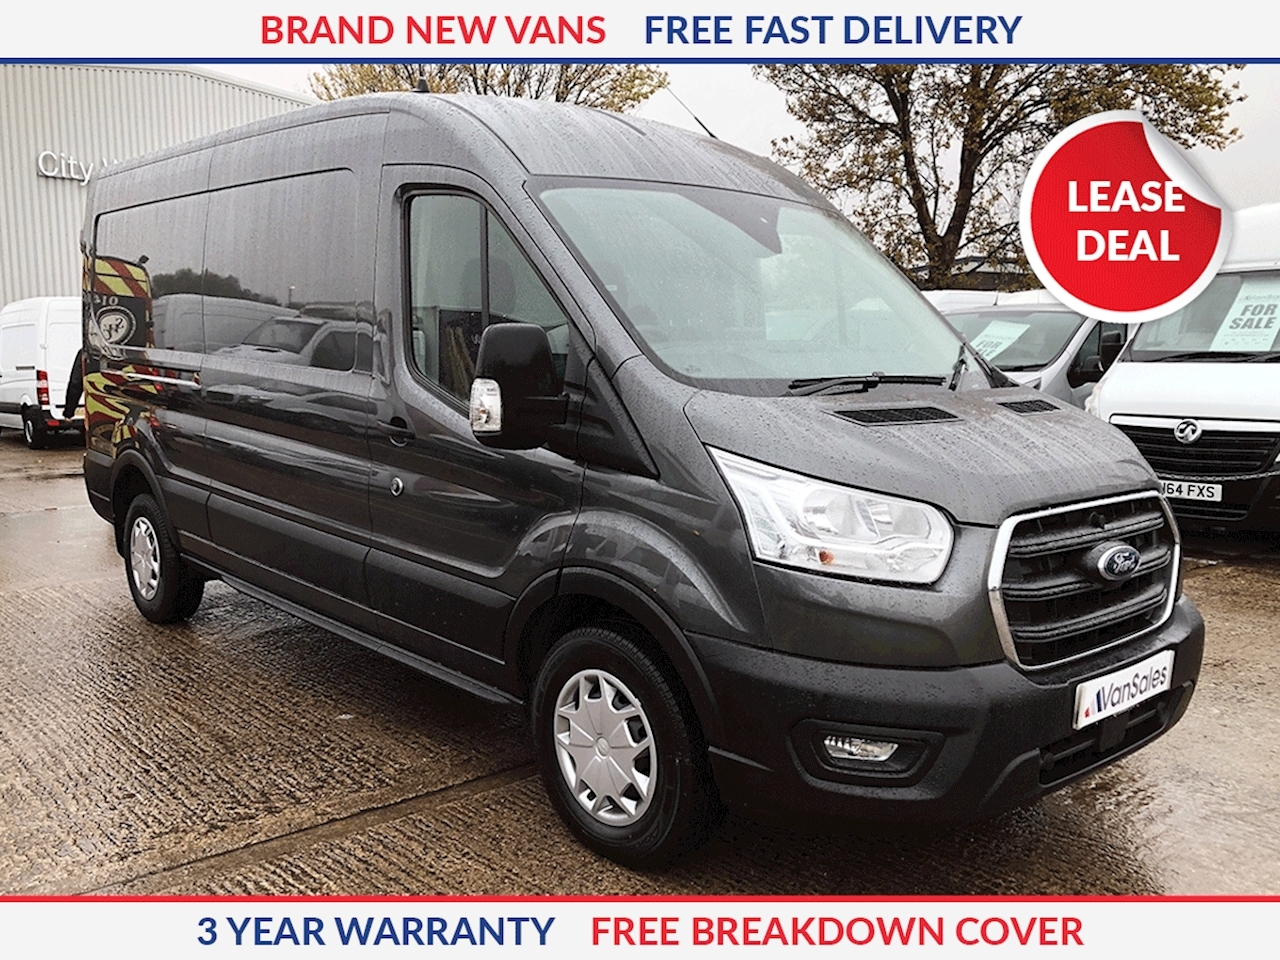 lwb vans for sale uk